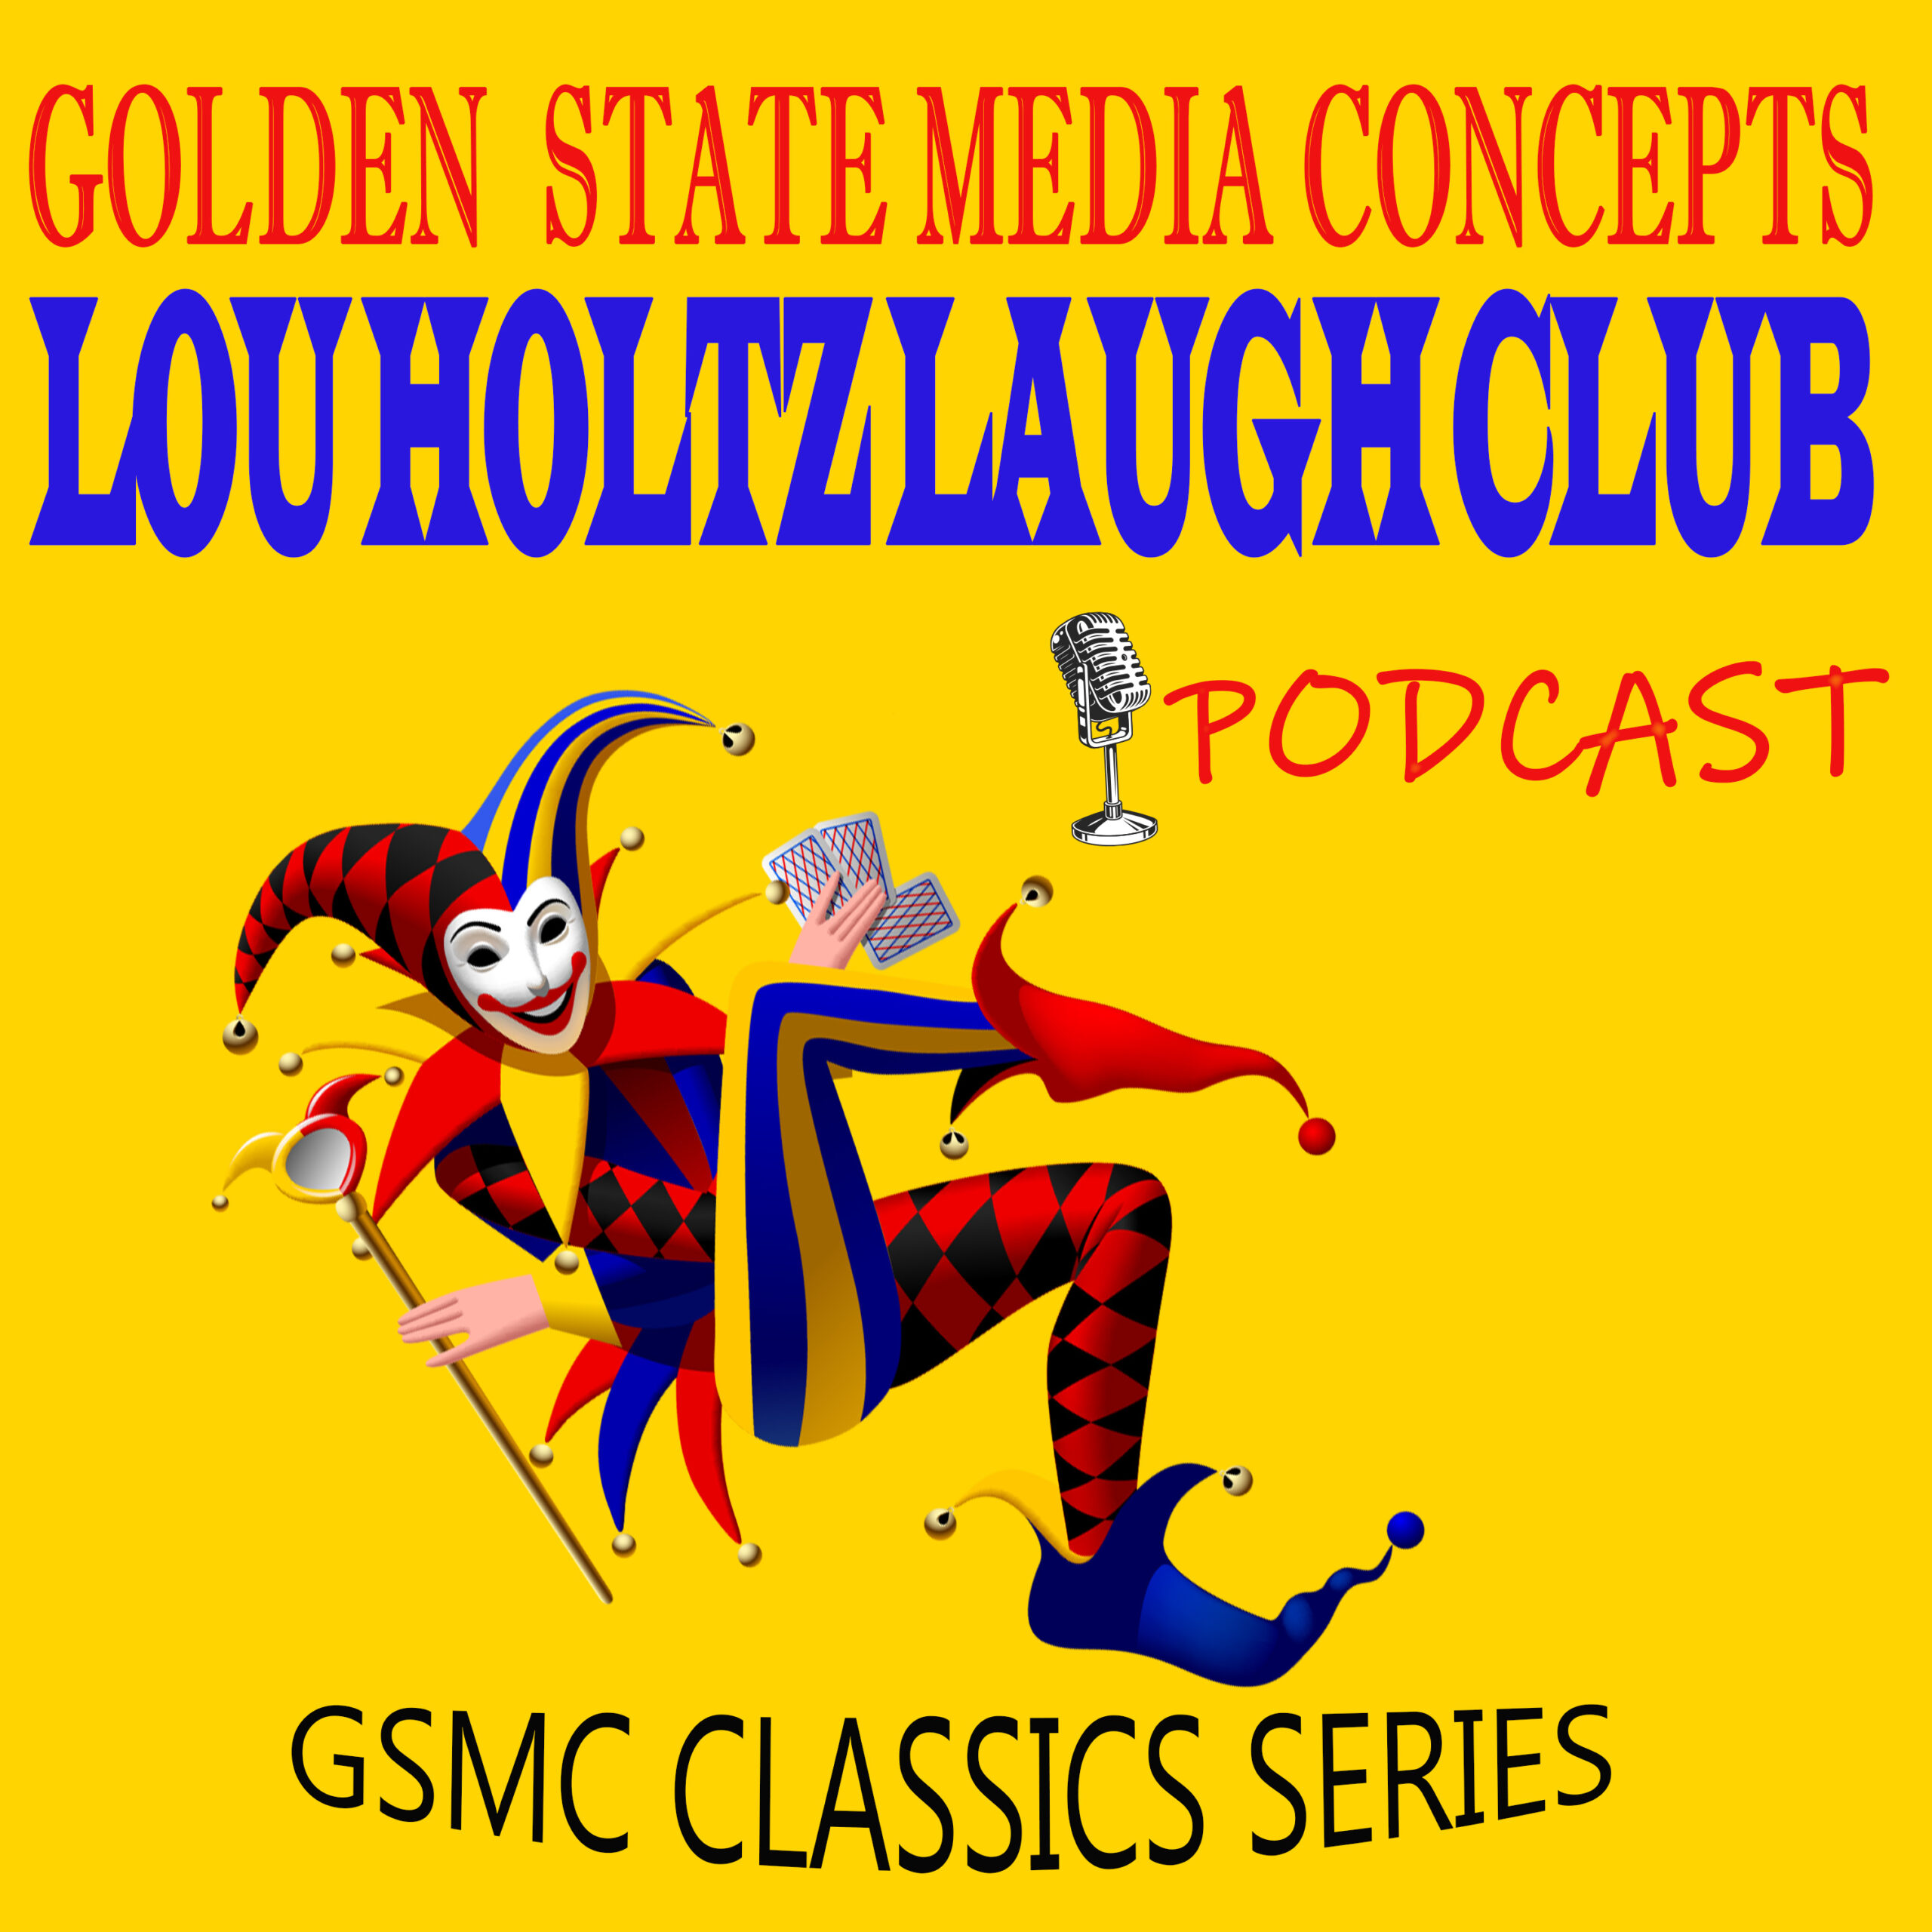 Lou Holtz Laugh Club